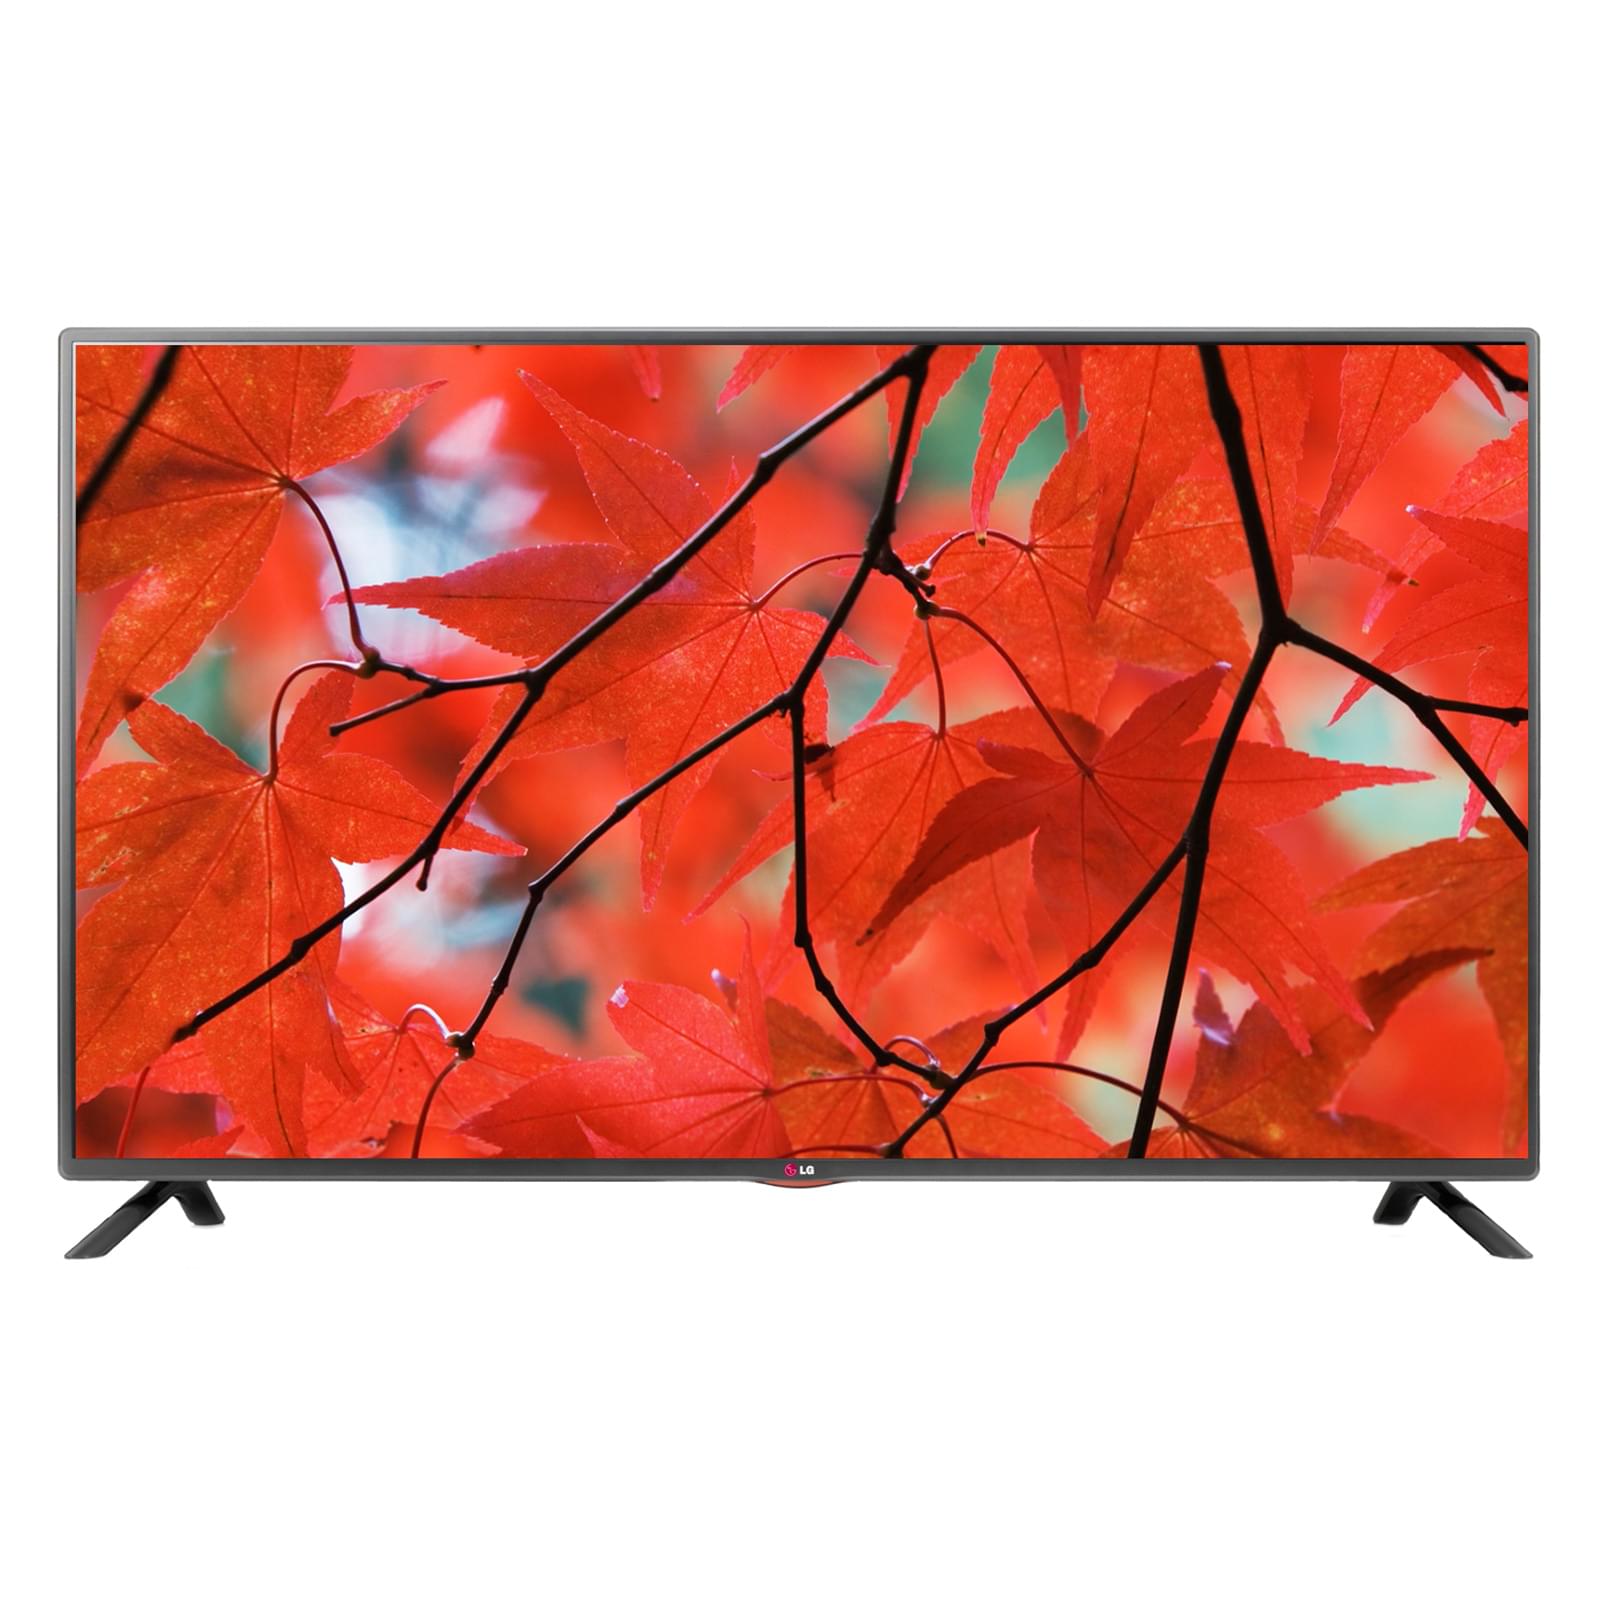 TV LG 42LB5610 - 42" (107cm) LED HDTV 1080p